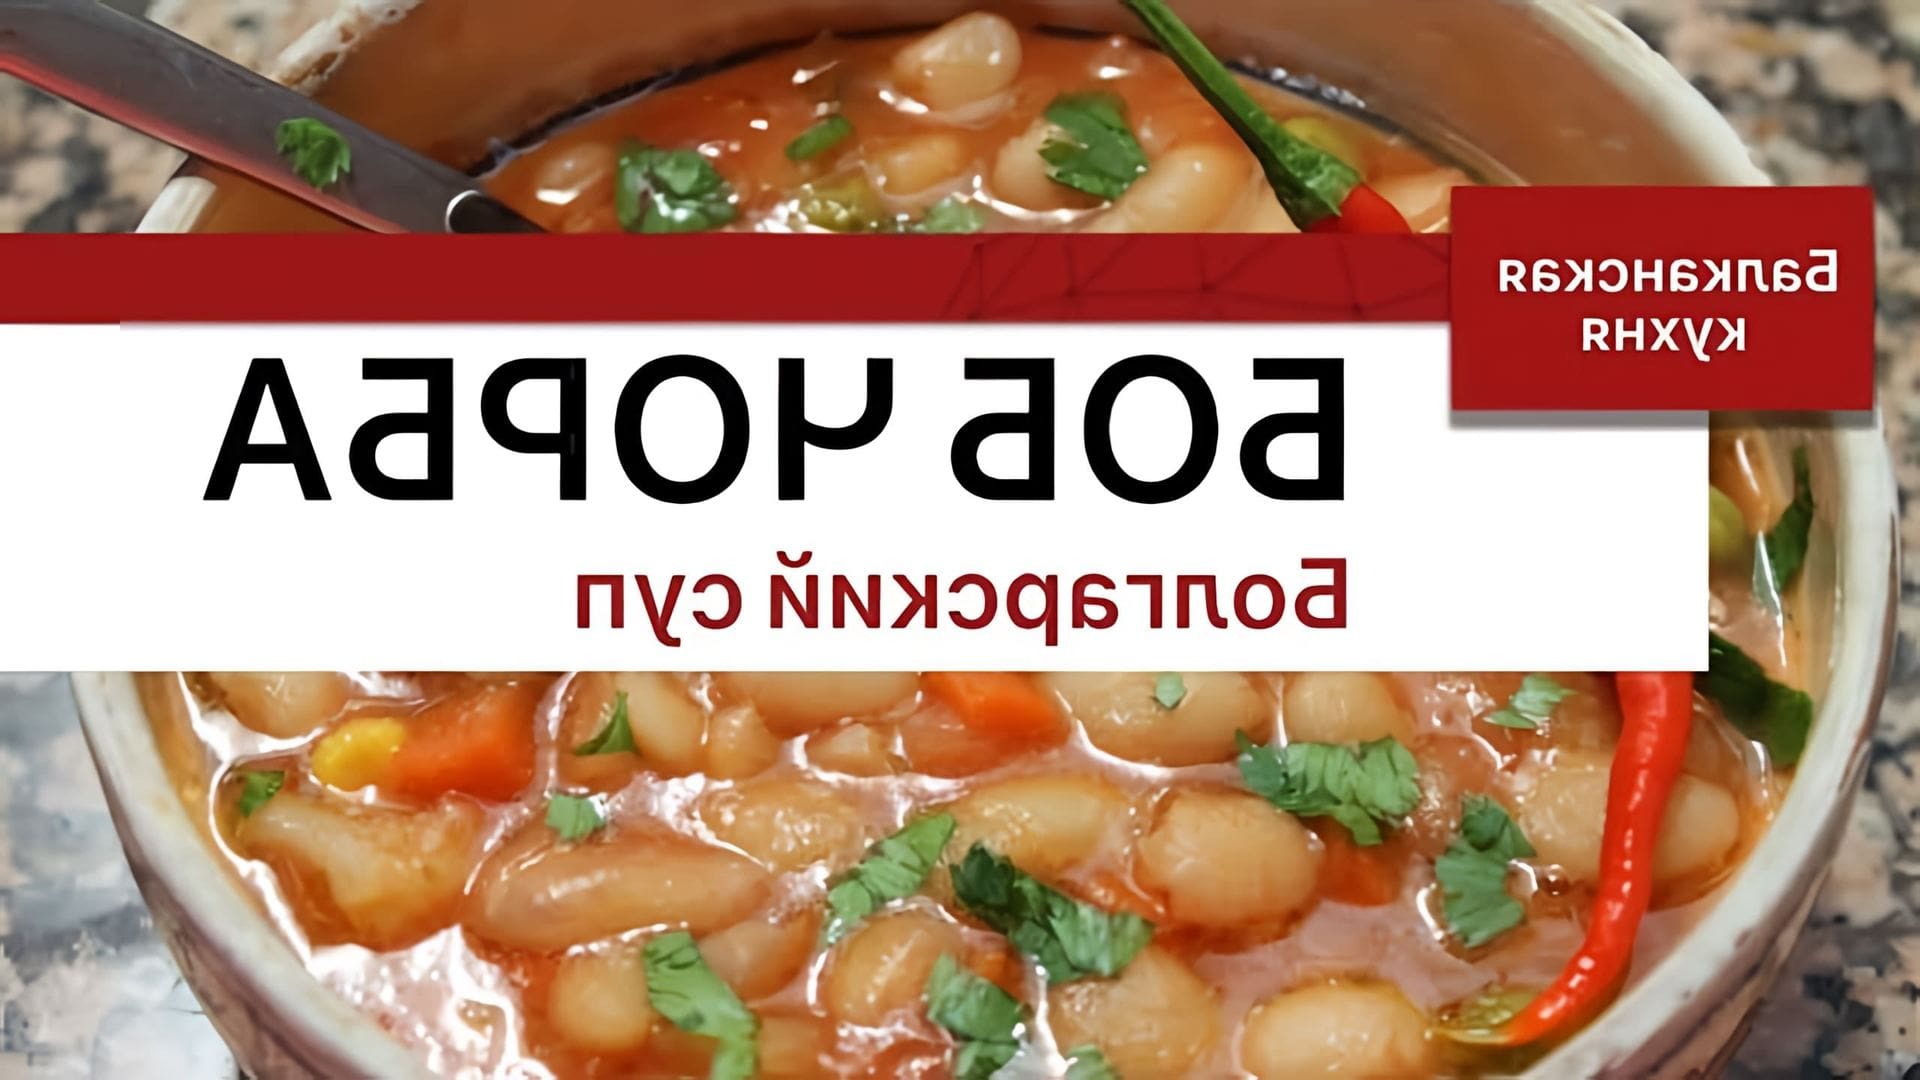 В этом видео представлен рецепт болгарского фасолевого супа, который называется "Боб-чорба"